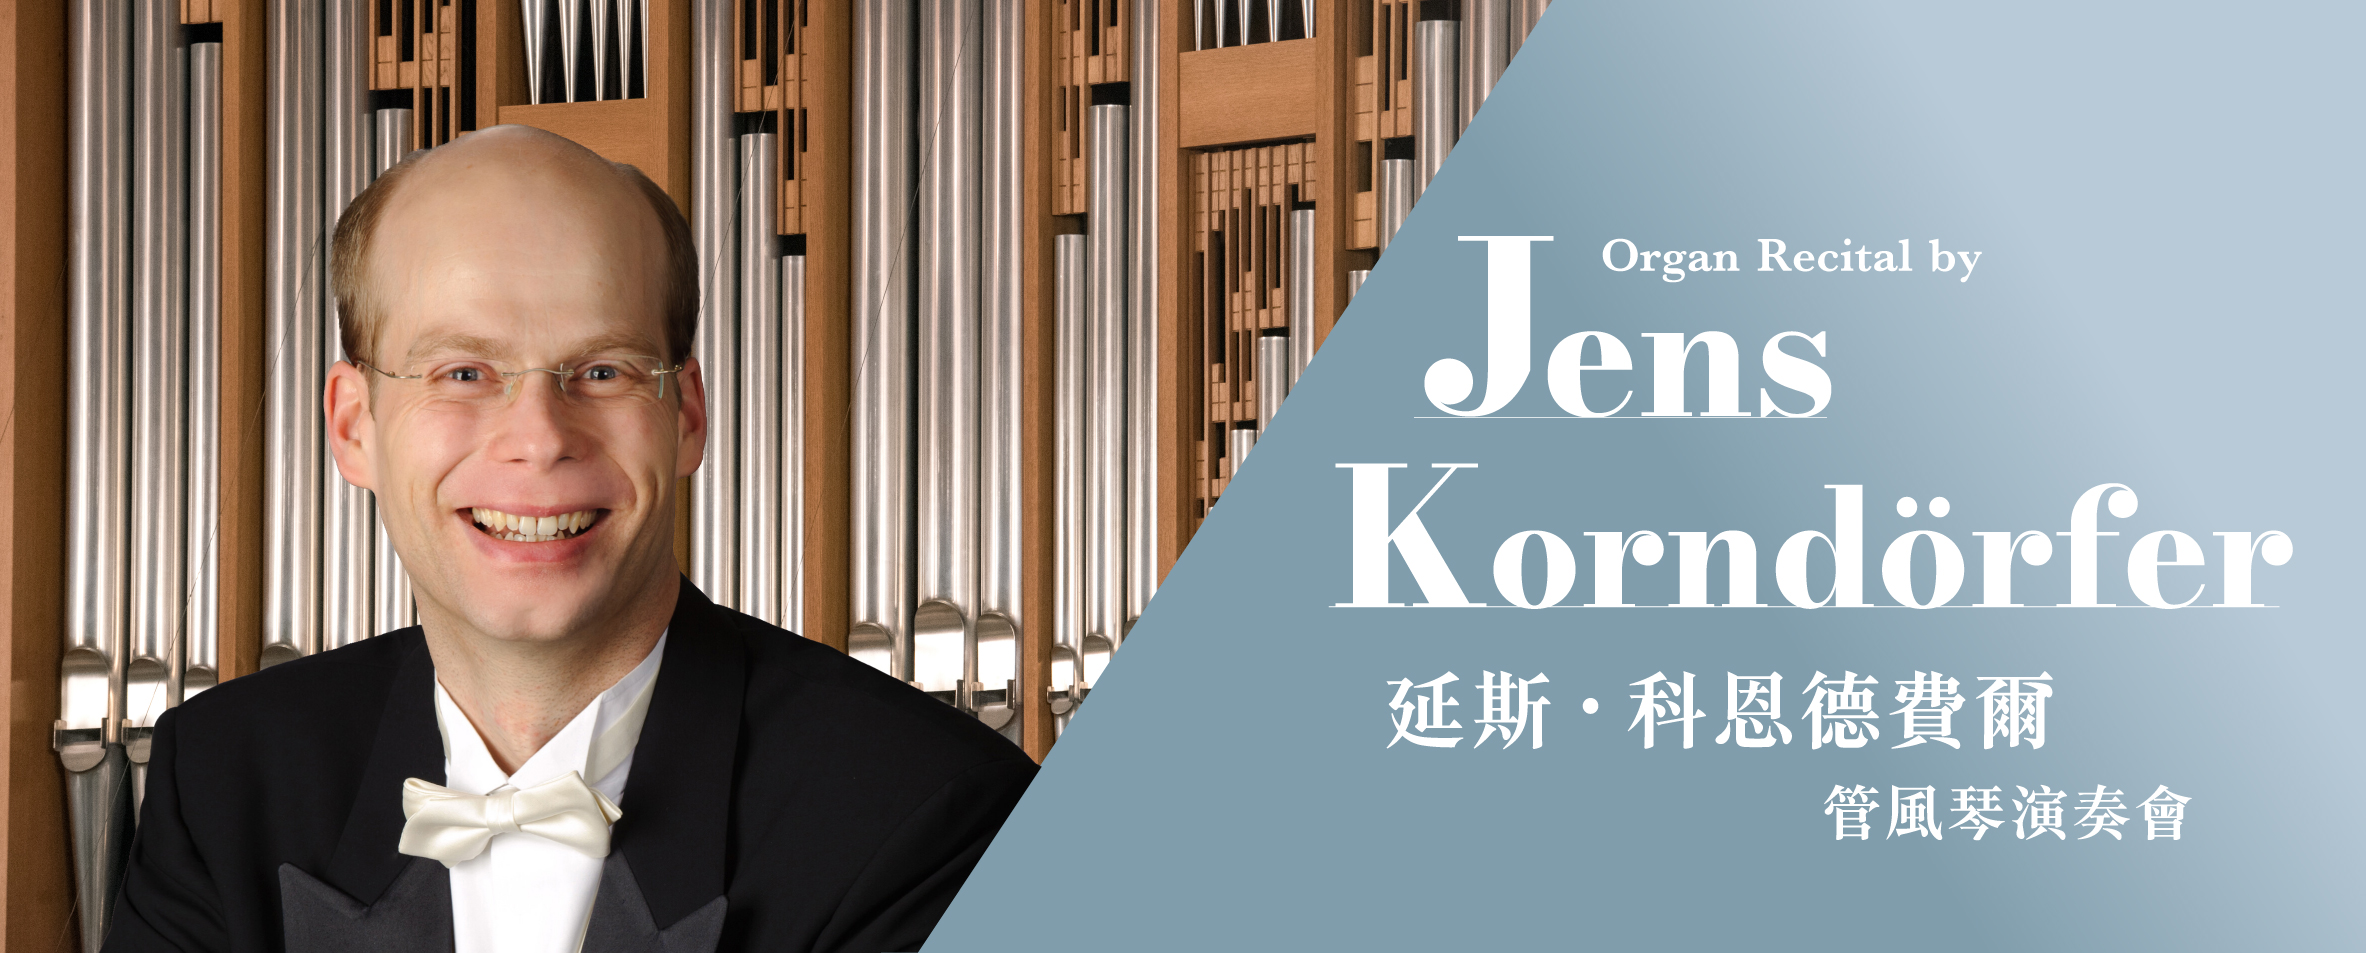 Organ Recital by Jens Korndörfer